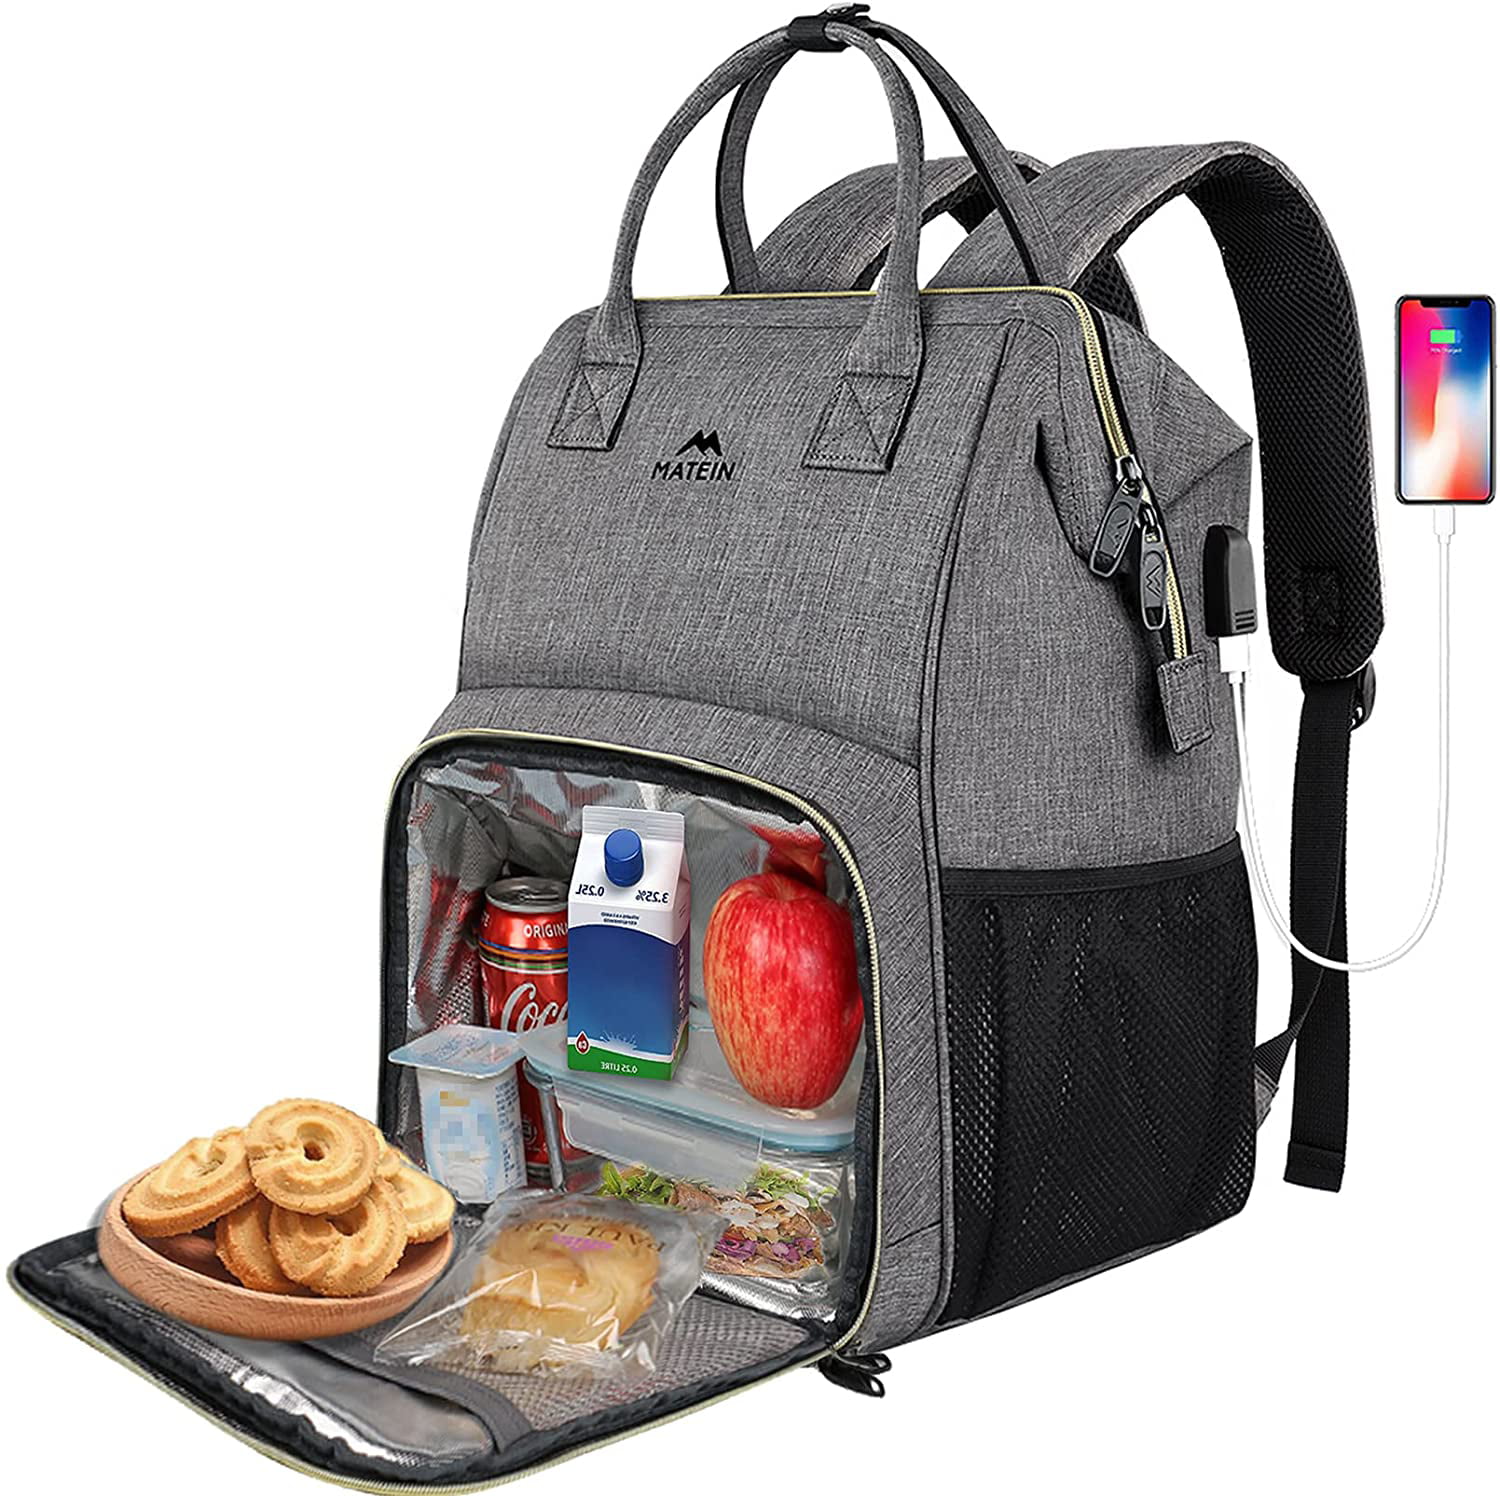 Basketball Backpack School Bookbags Large Capacity Students Lunch Box Travel Bag Laptop Bookbag For Men Women 